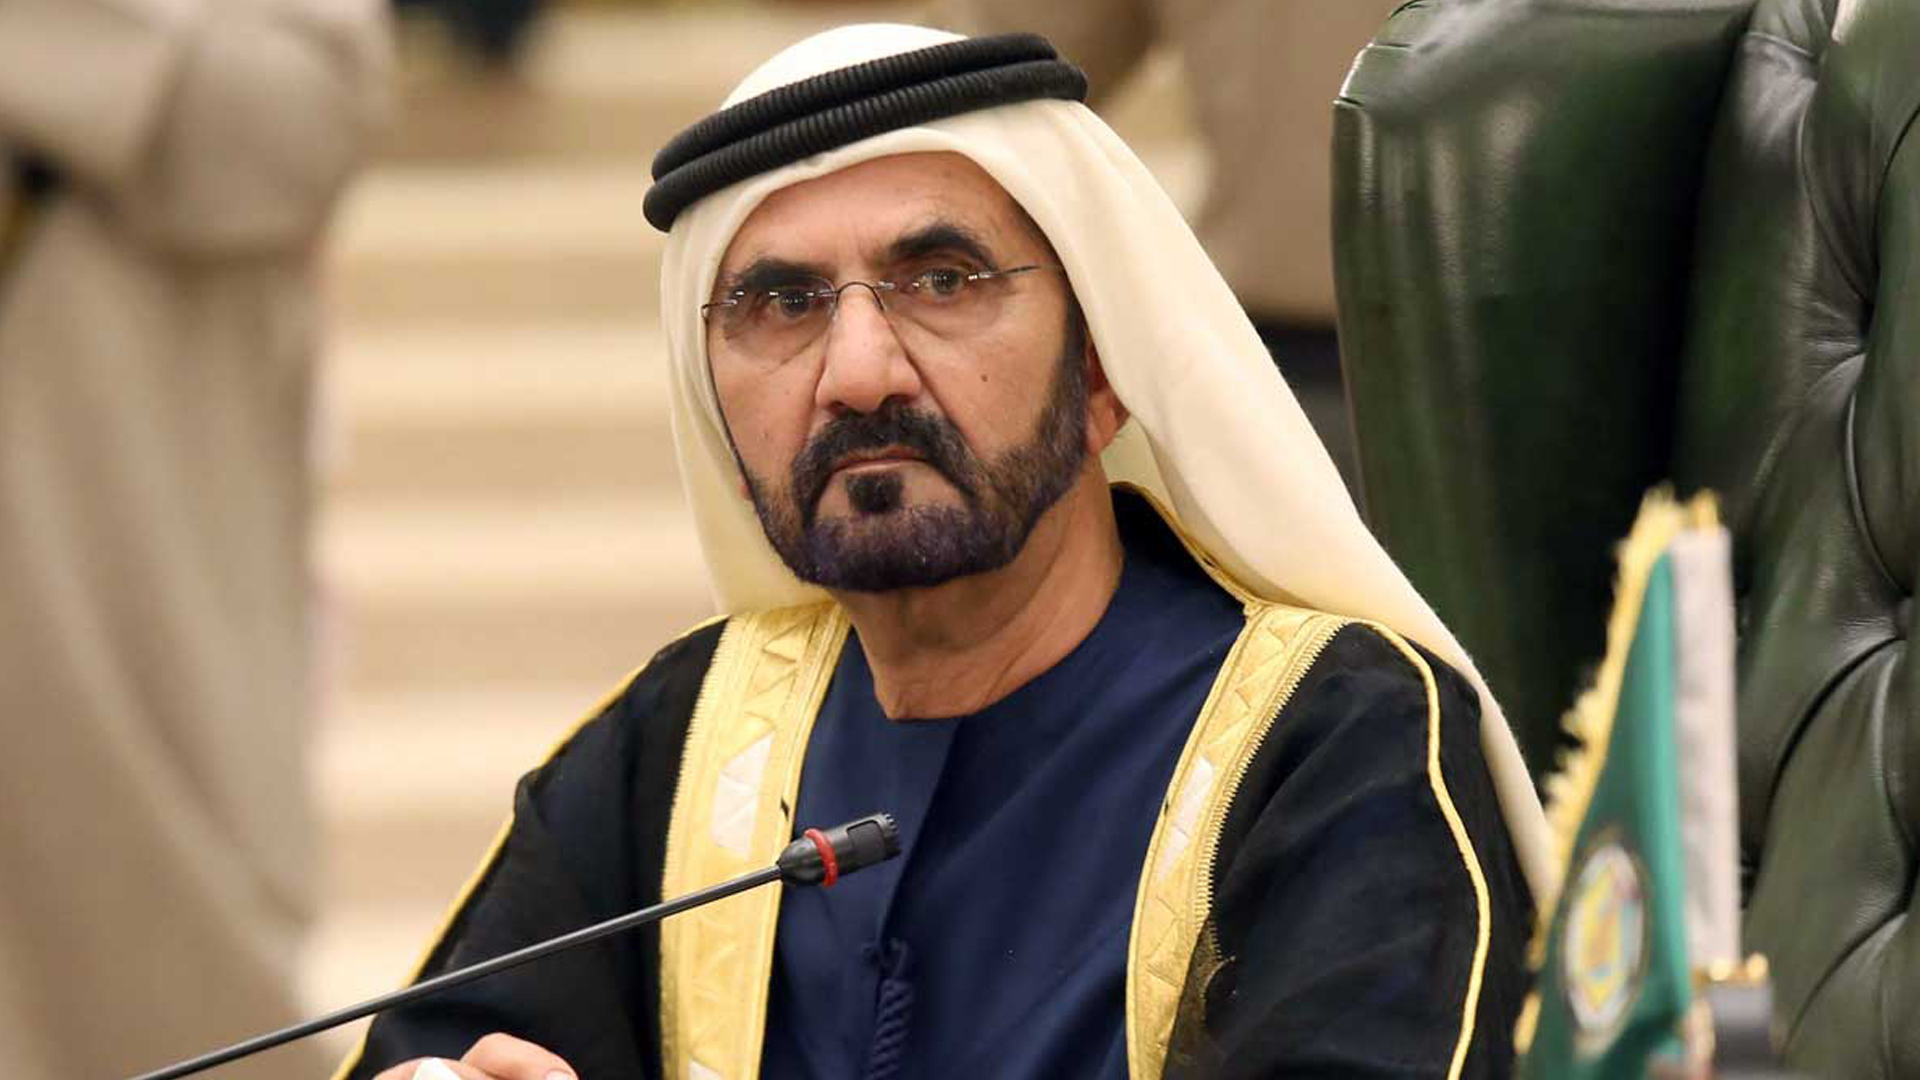 حاكم دبي يأمر بتشييد مبنى مسافرين بمطار آل مكتوم الدولي بتكلفة 35 مليار دولار